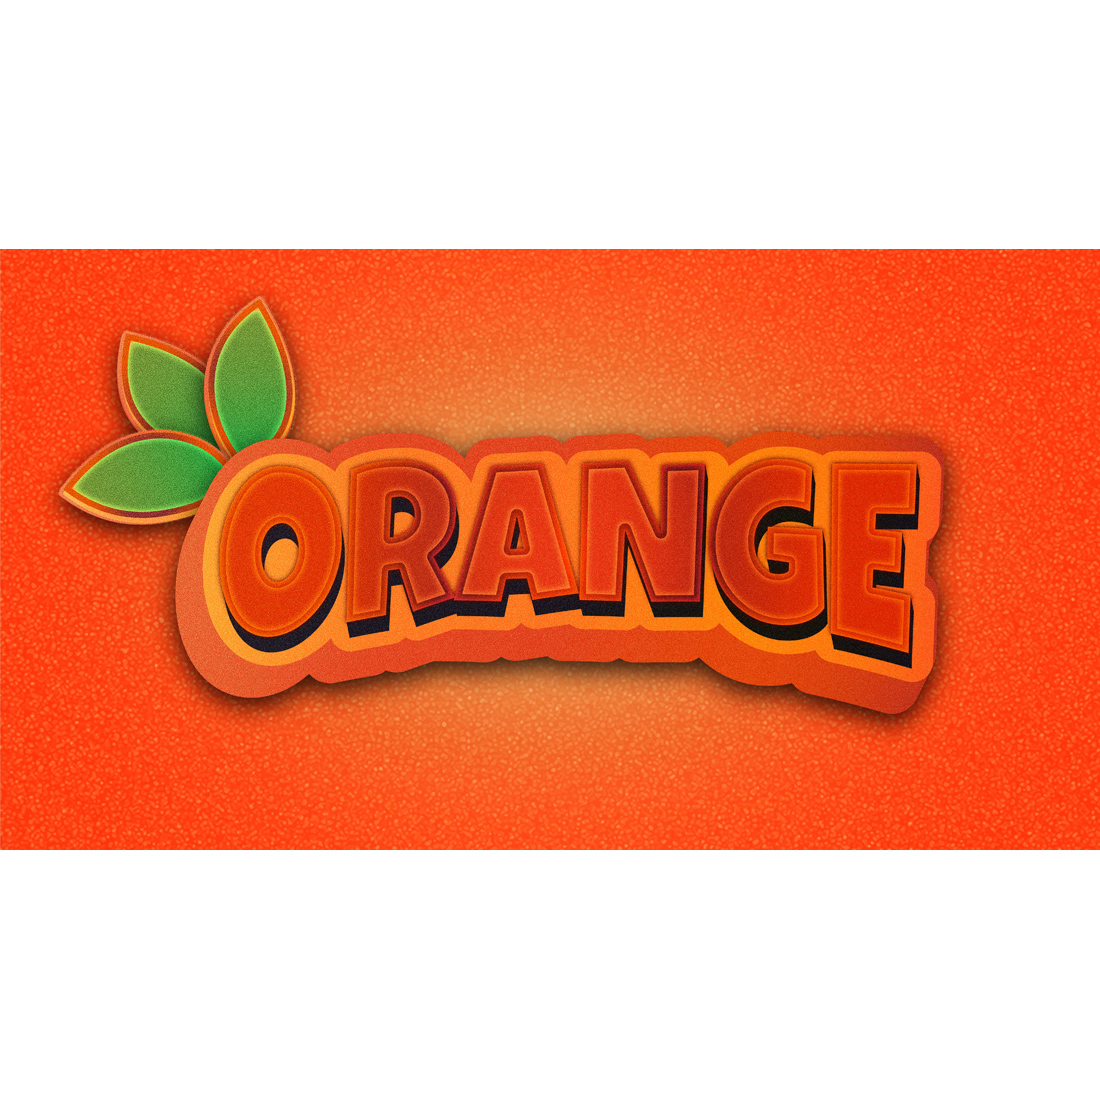 orange 3d editable text effect, orange 3d text effect vectors, orange 3d text effect images, orange 3d editable text, orange 3d text effect editable, orange text effect, modern 3d orange text effect, preview image.